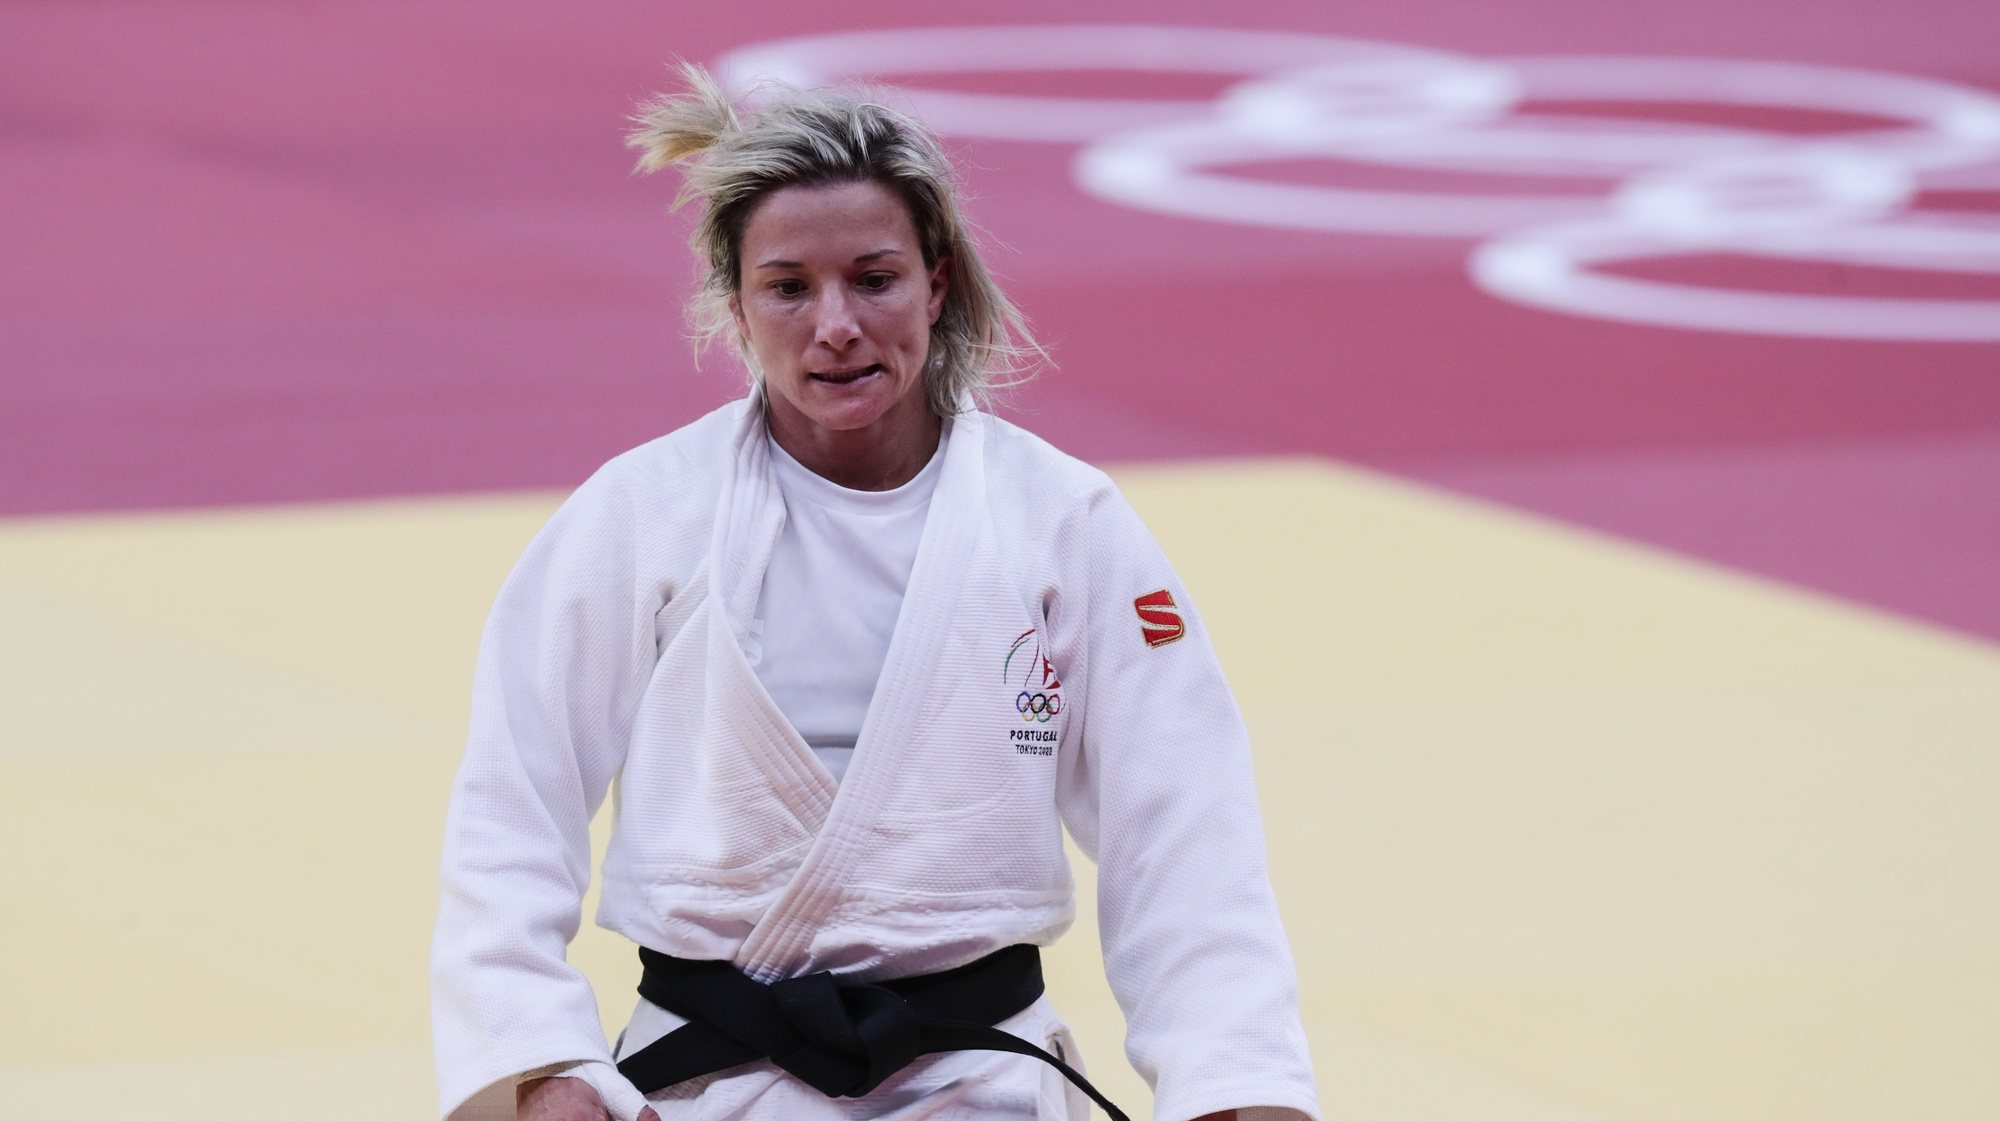 Costa diz que Telma Monteiro é uma lutadora e espera que recupere depressa